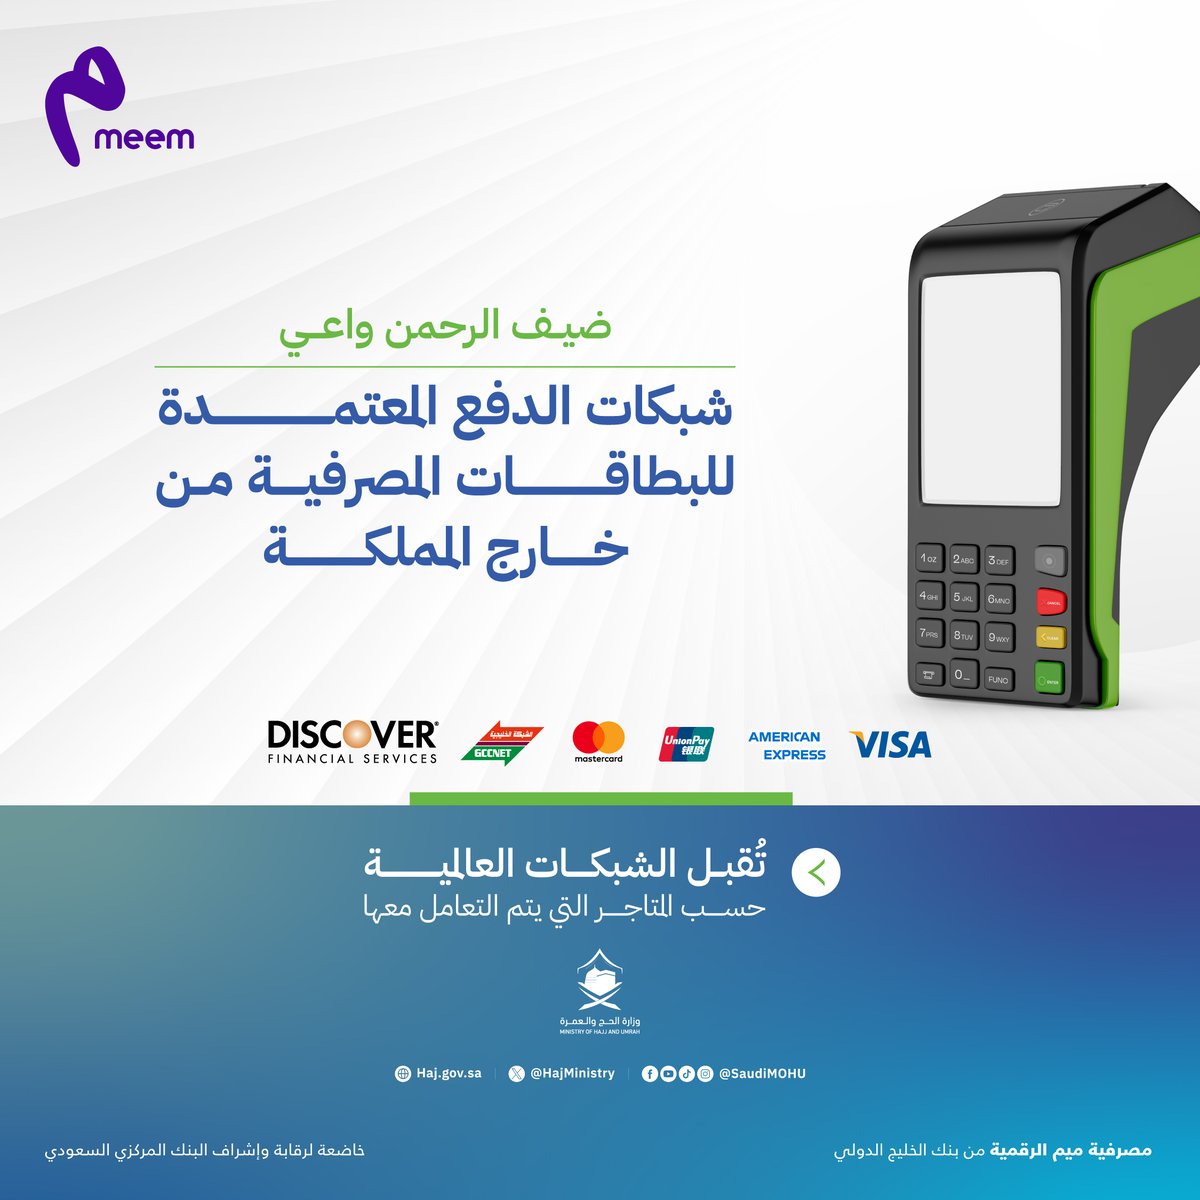 أثناء زيارتك للسعودية؛ تأكد من استخدام شبكات الدفع المعتمدة عند الشراء باستخدام بطاقات الائتمان الصادرة من خارج المملكة. #ميم